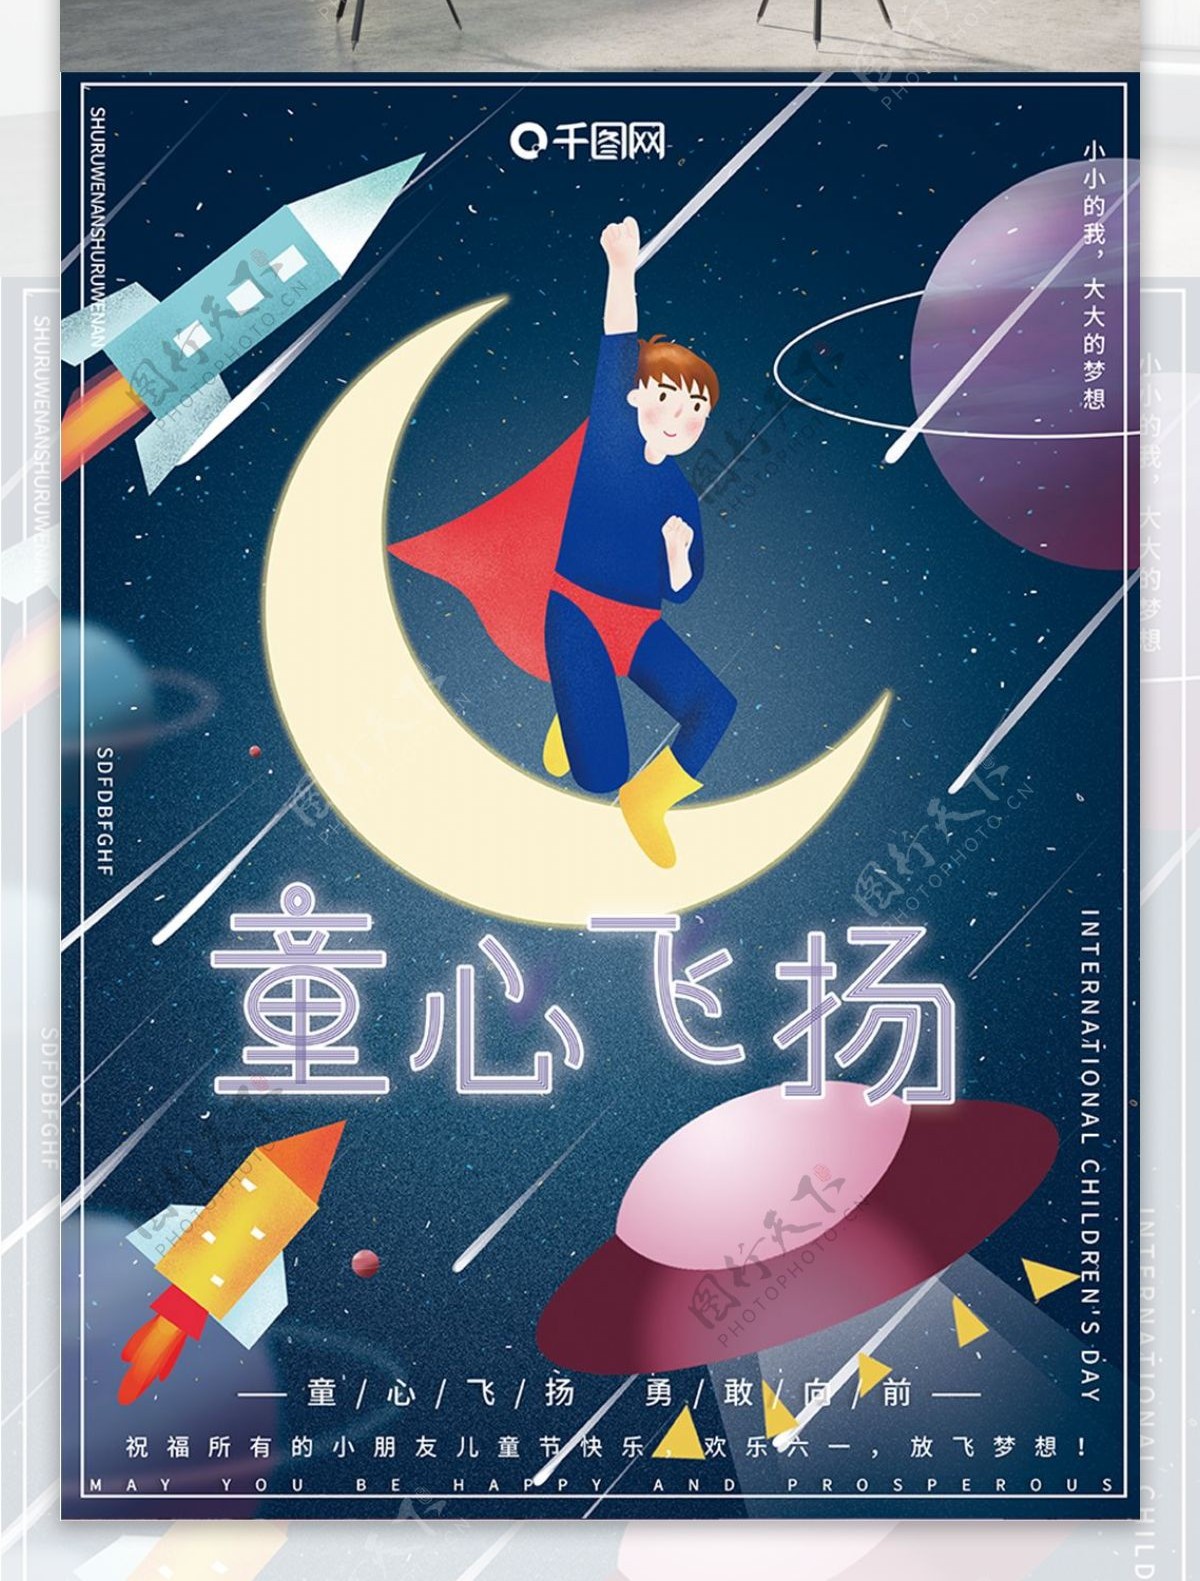 原创插画梦幻宇宙星空儿童节快乐节日海报